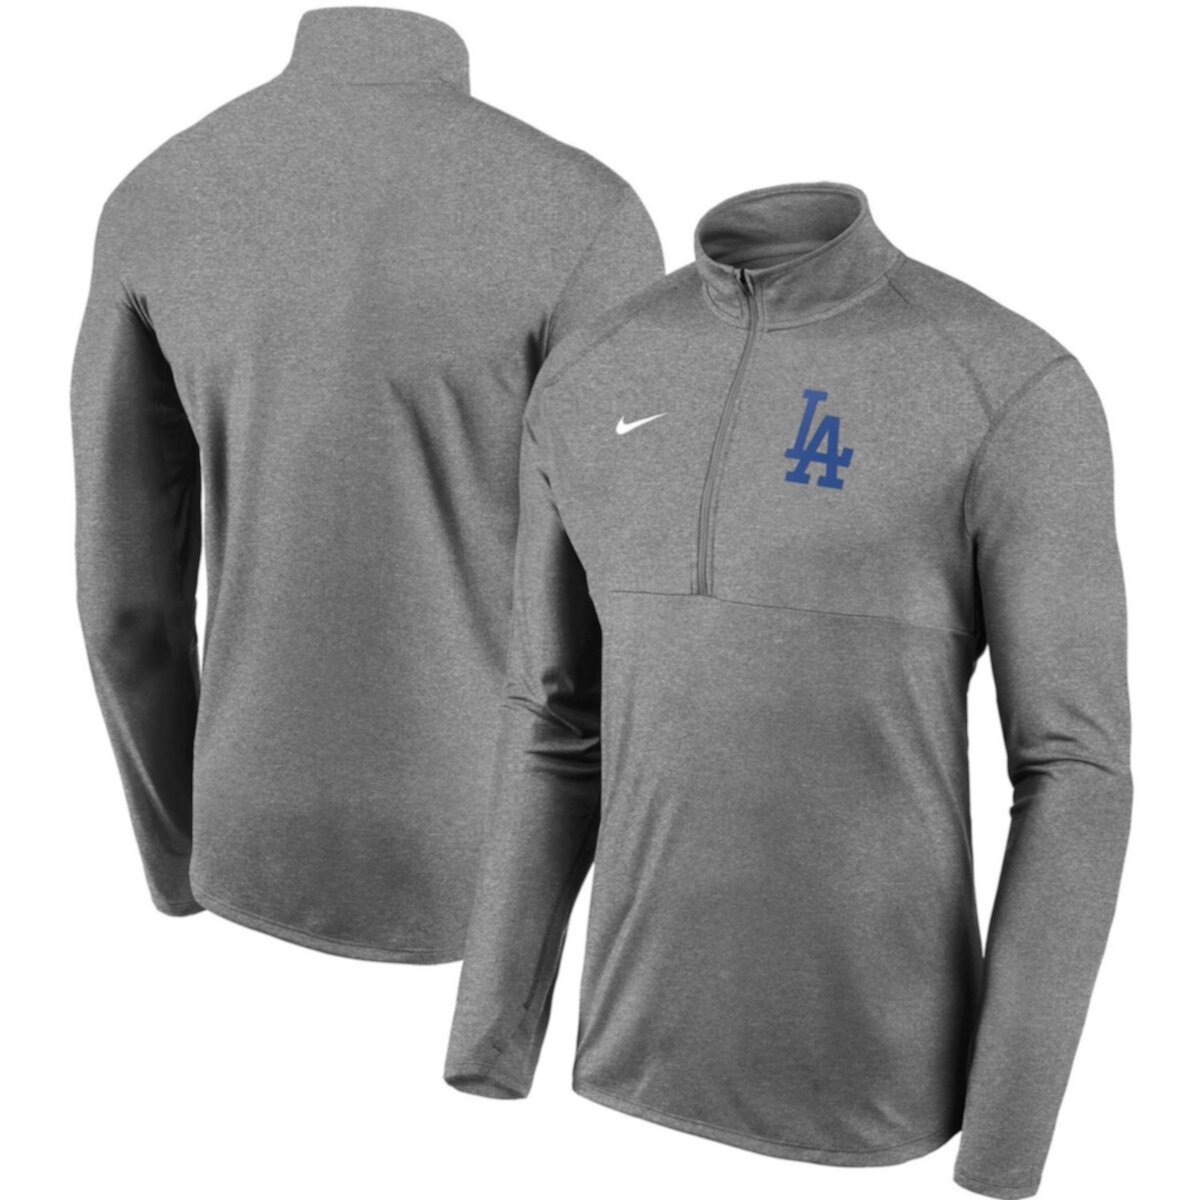 Мужская серая куртка-пуловер с молнией до середины молнии Nike серая команда Los Angeles Dodgers Team Nike